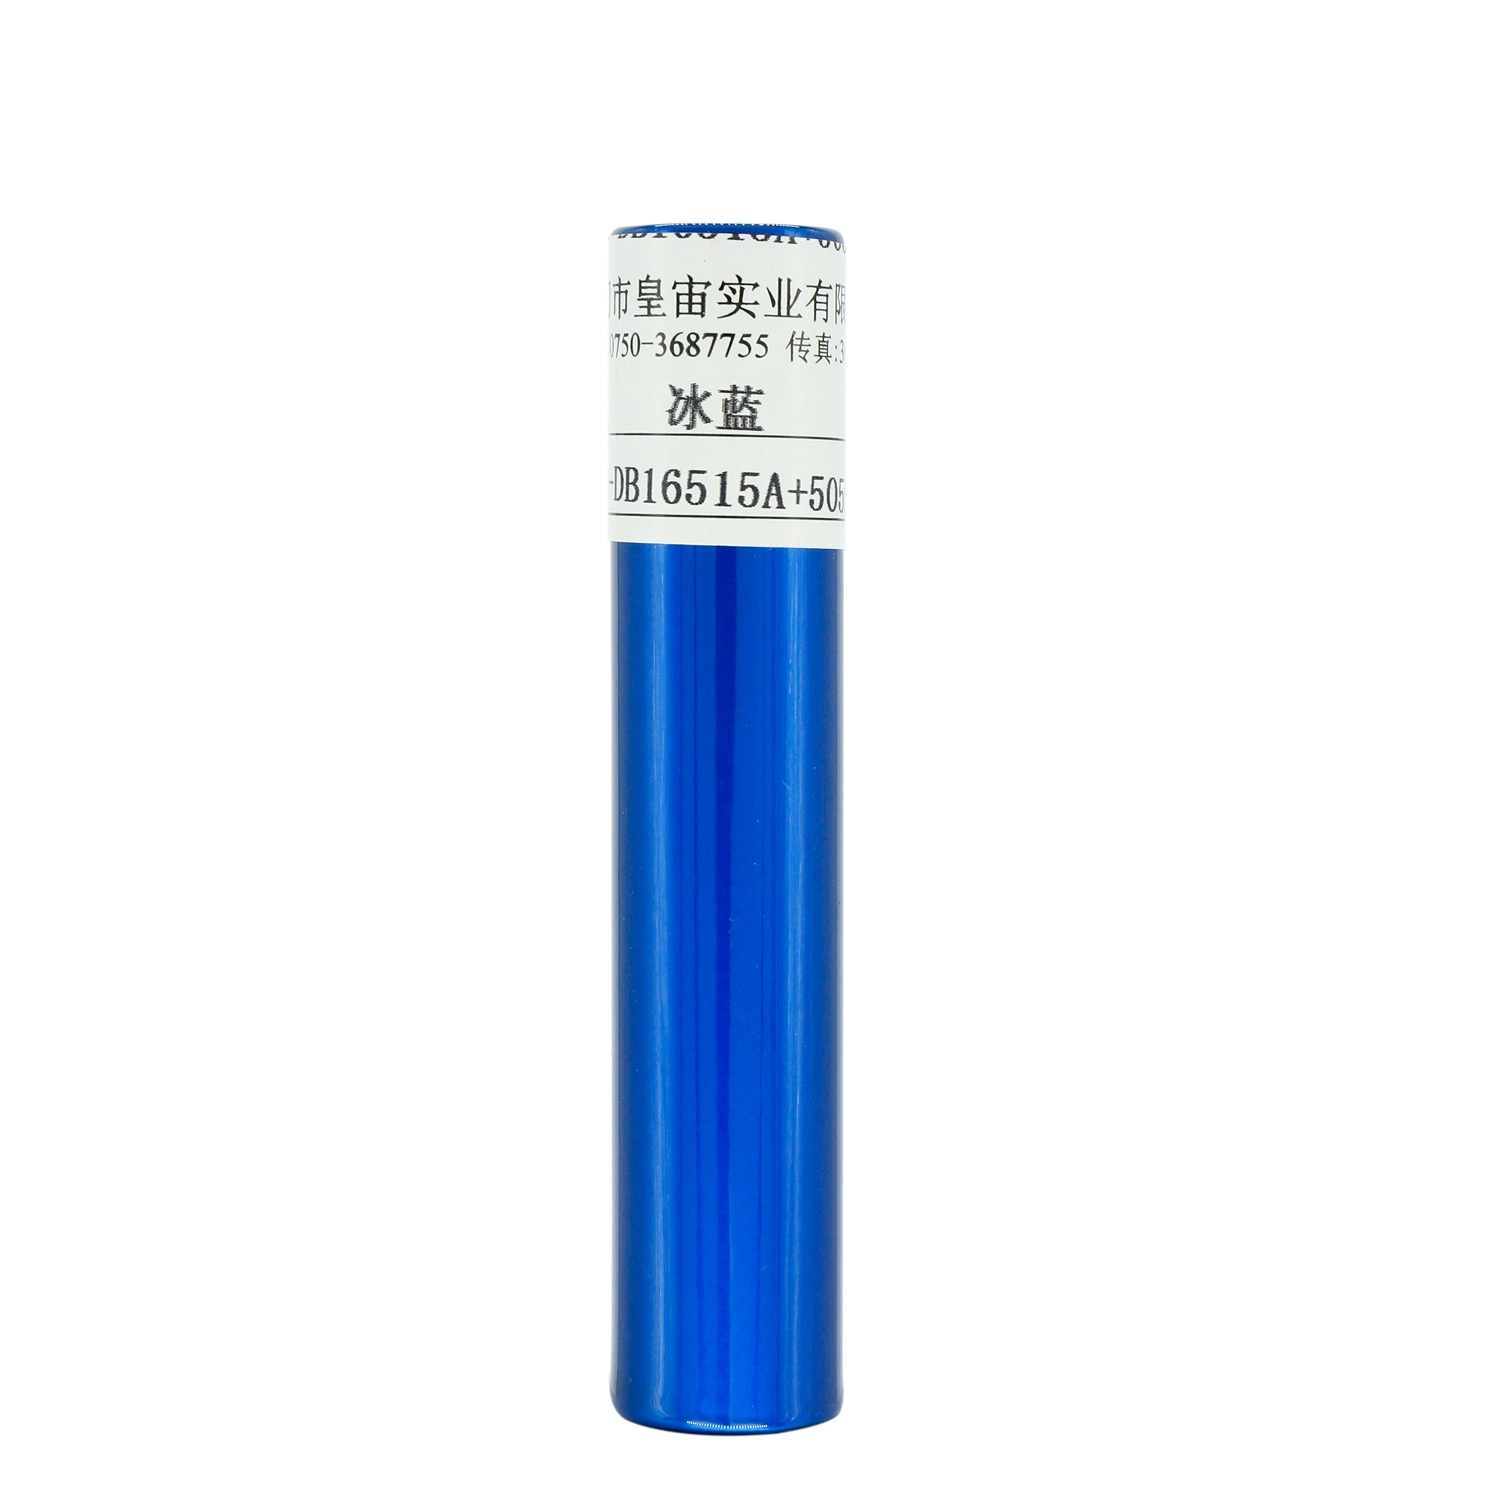 Résistance aux UV polyester époxy électrostatique peinture chrome métallique bleu acier revêtement poudre